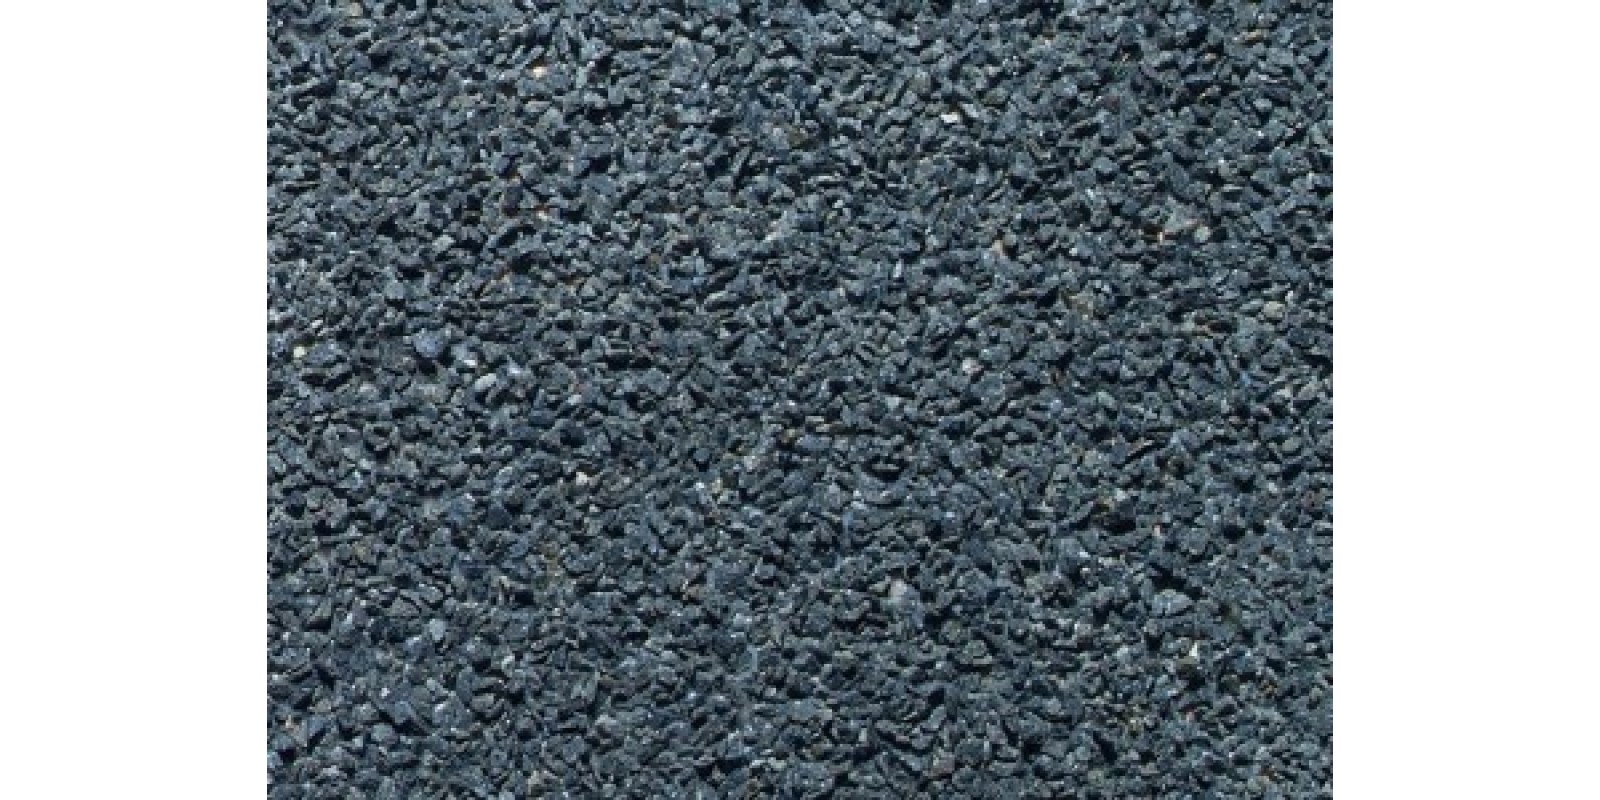 NO09365 PROFI Ballast "Basaltic Rock", dark grey